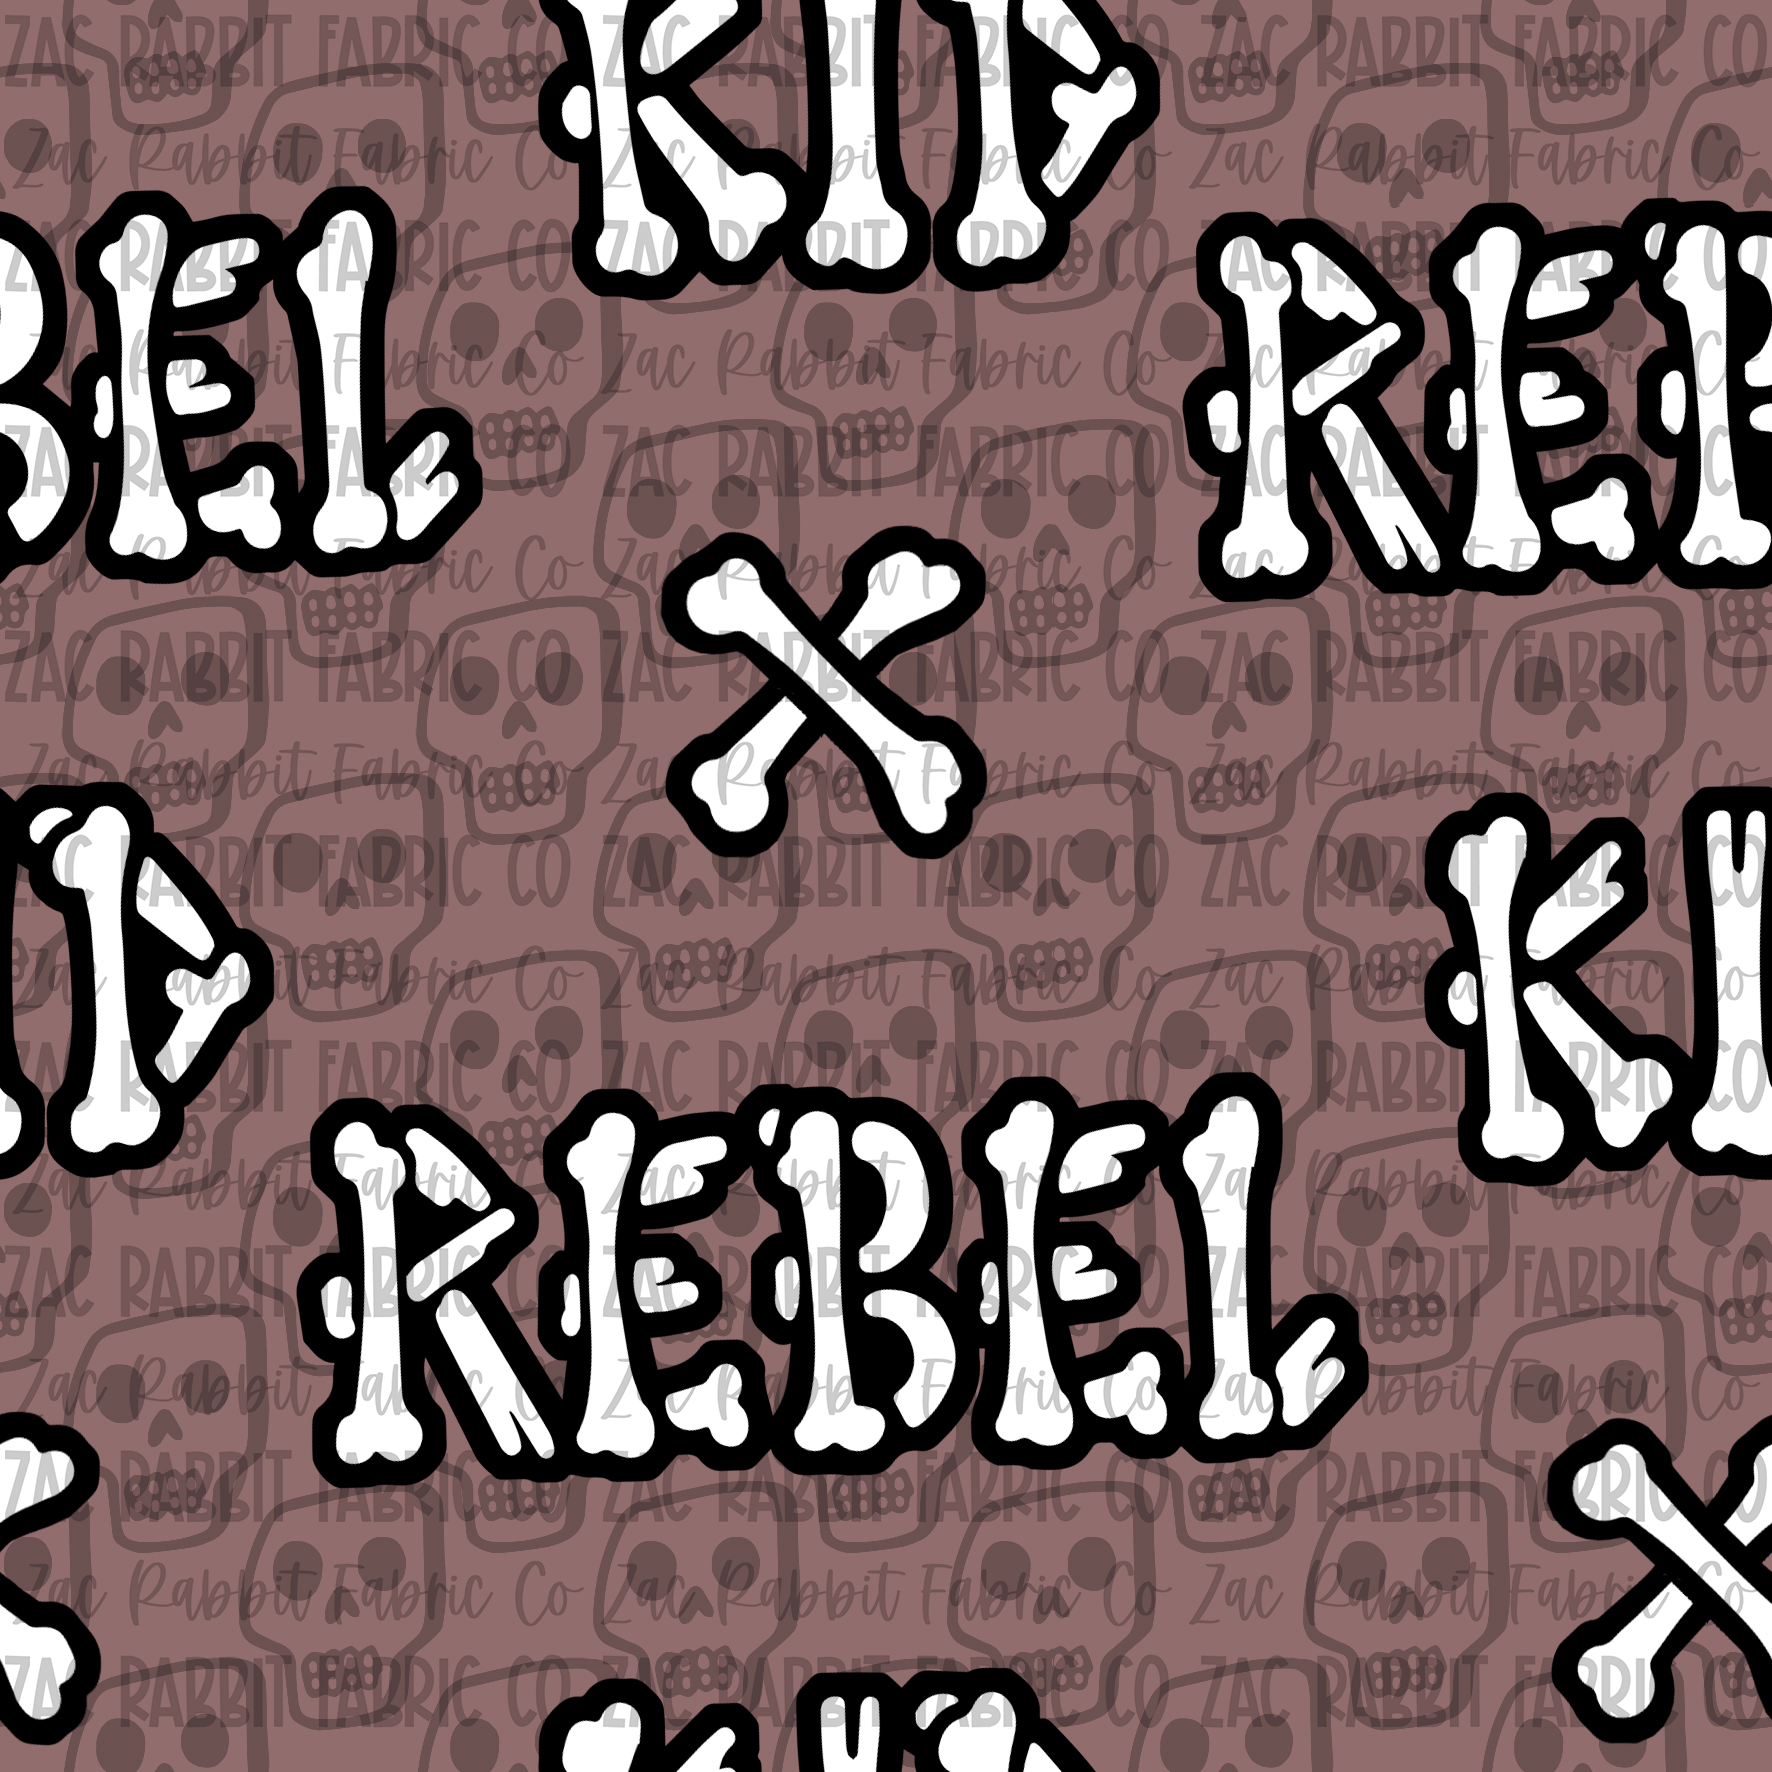 Rebel Kid